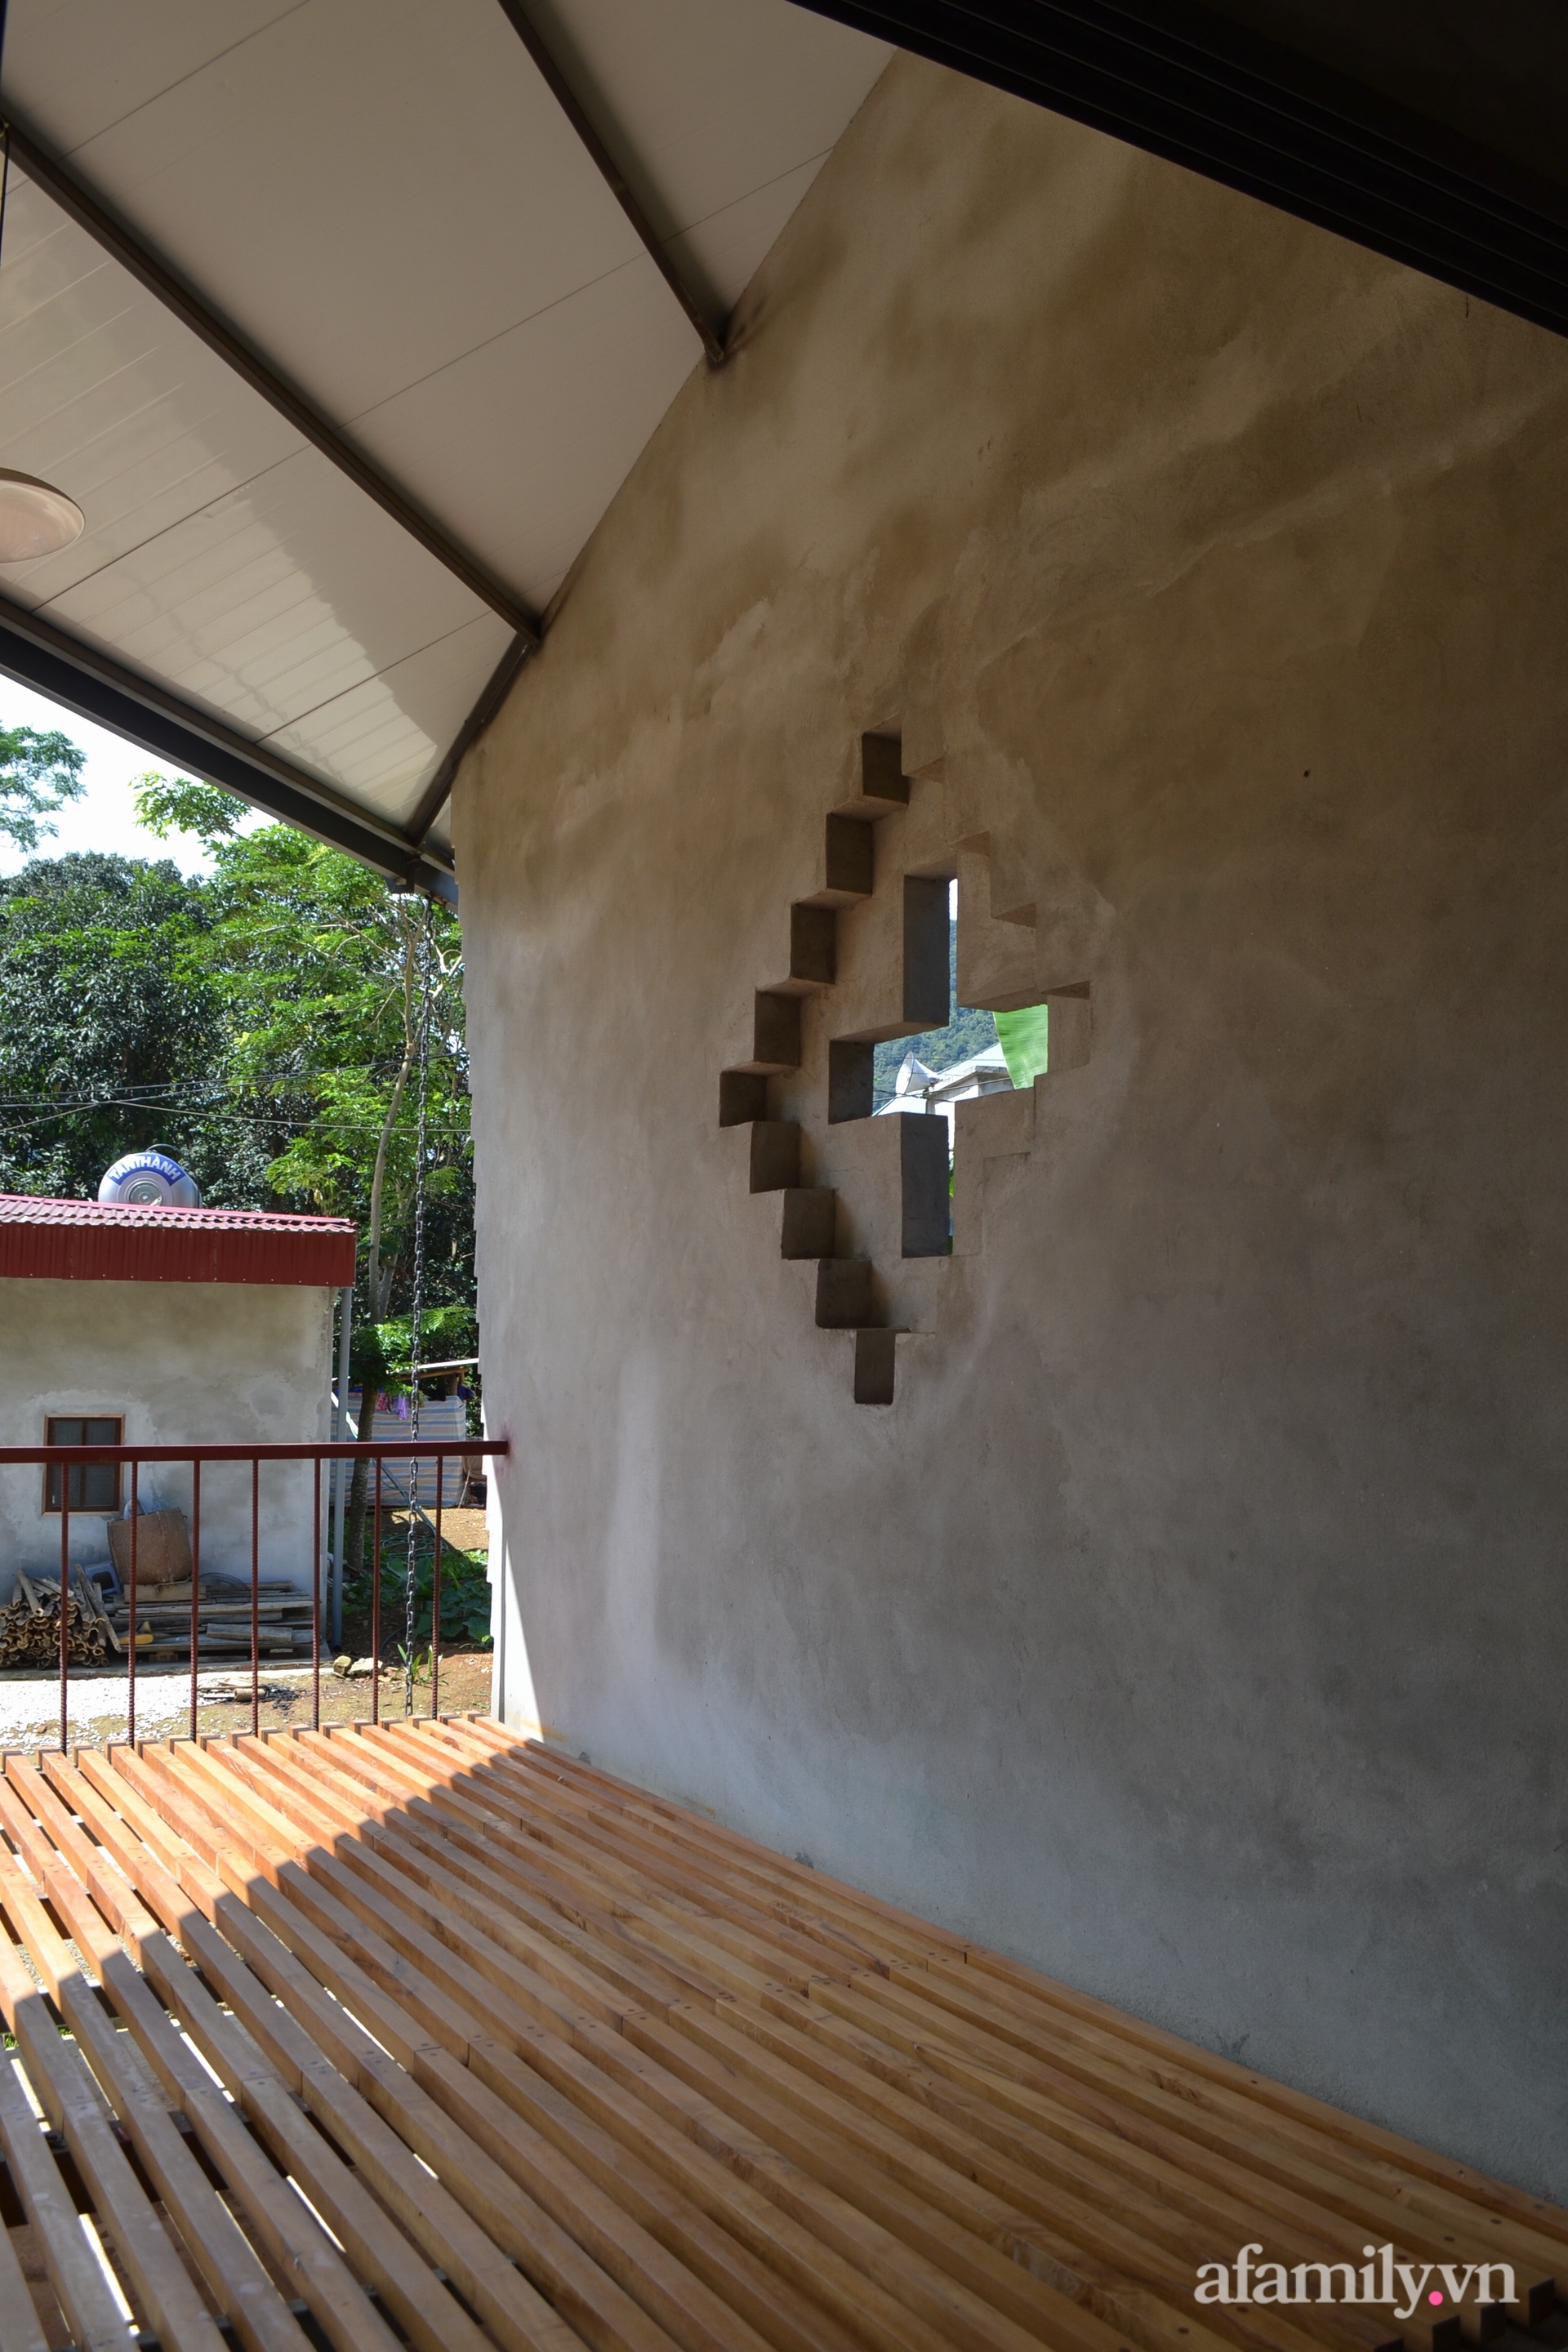 Ngôi nhà mát rượi dưới nắng gắt mùa hè nhờ thiết kế mái hai tầng và ống khói 3 mét ở Thanh Hóa - Ảnh 12.